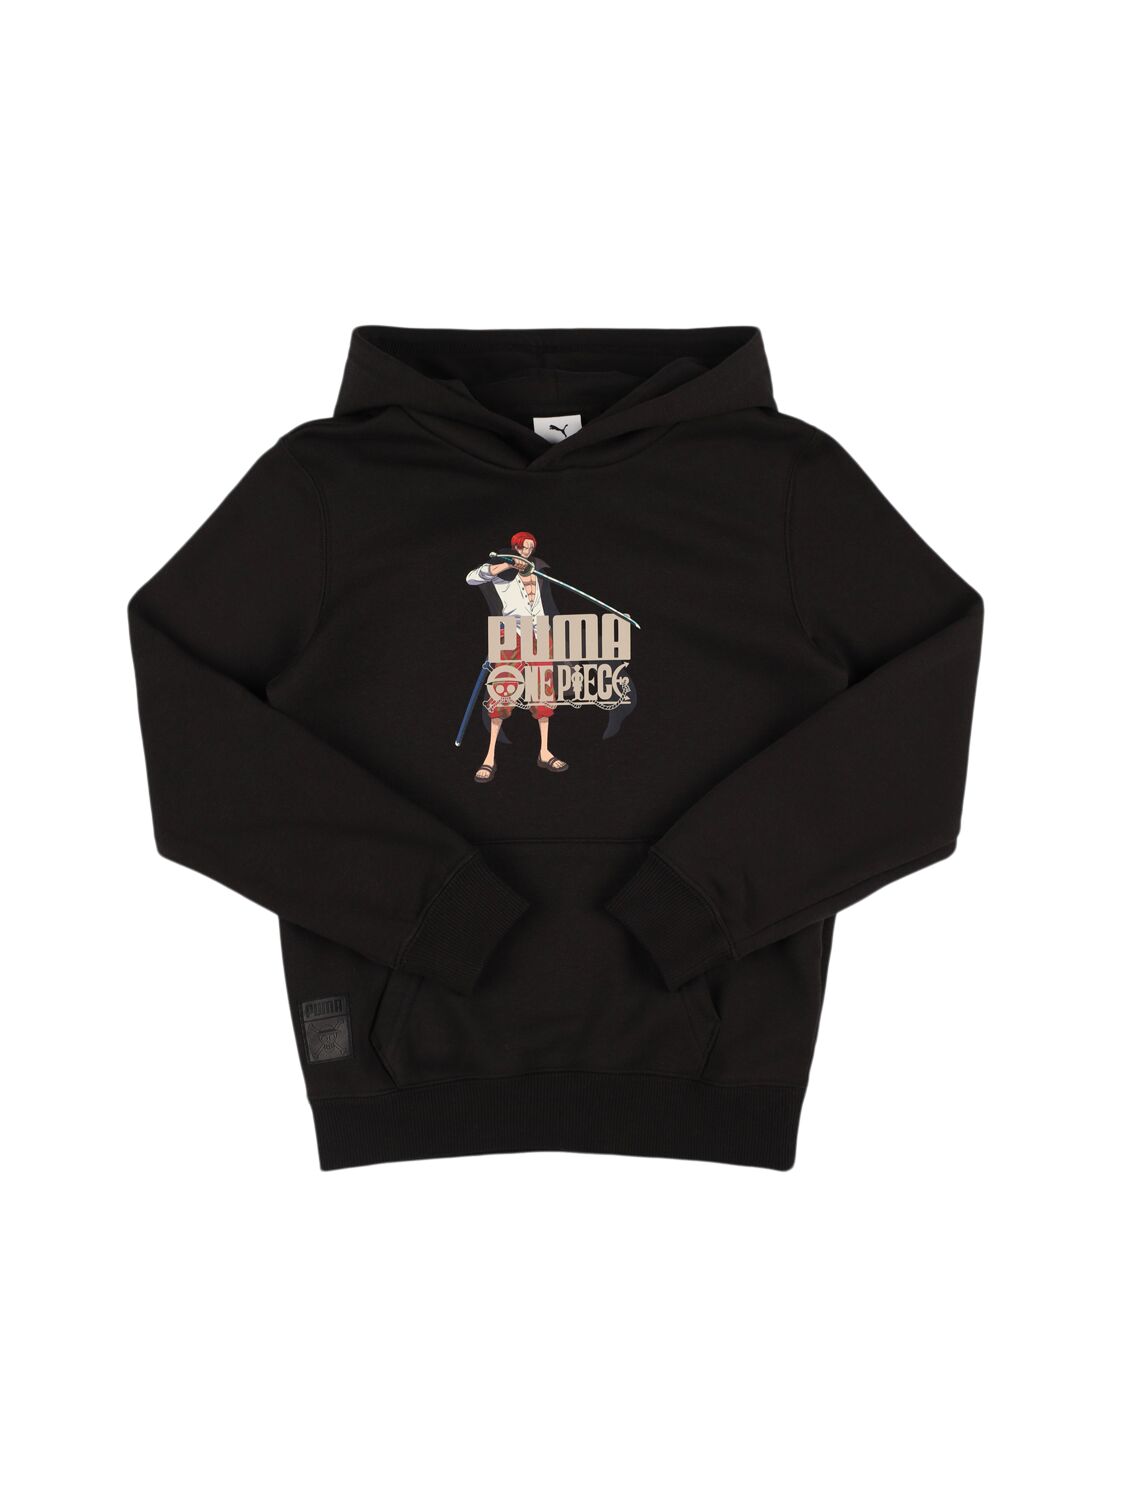 Puma Kids' One Piece Print Cotton Blend Sweatshirt In Black